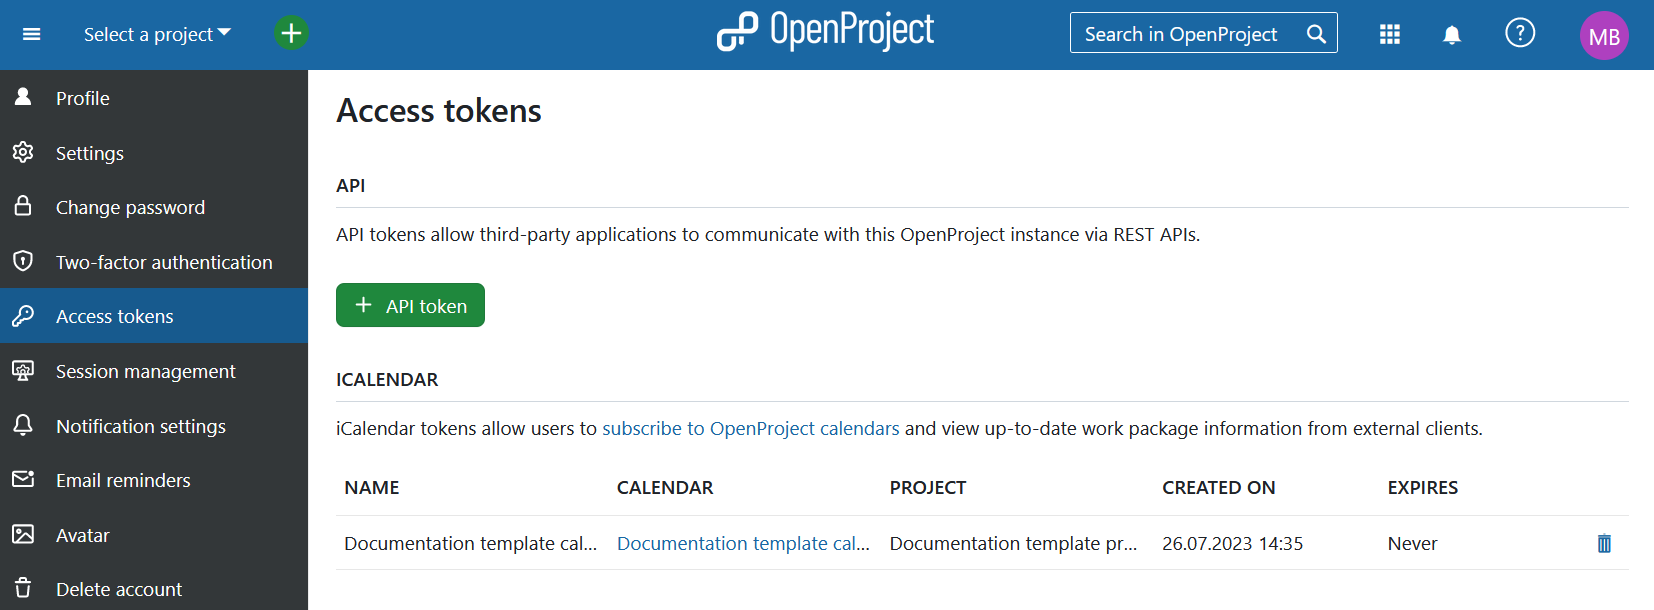 tokens de acceso de mi cuenta en OpenProject